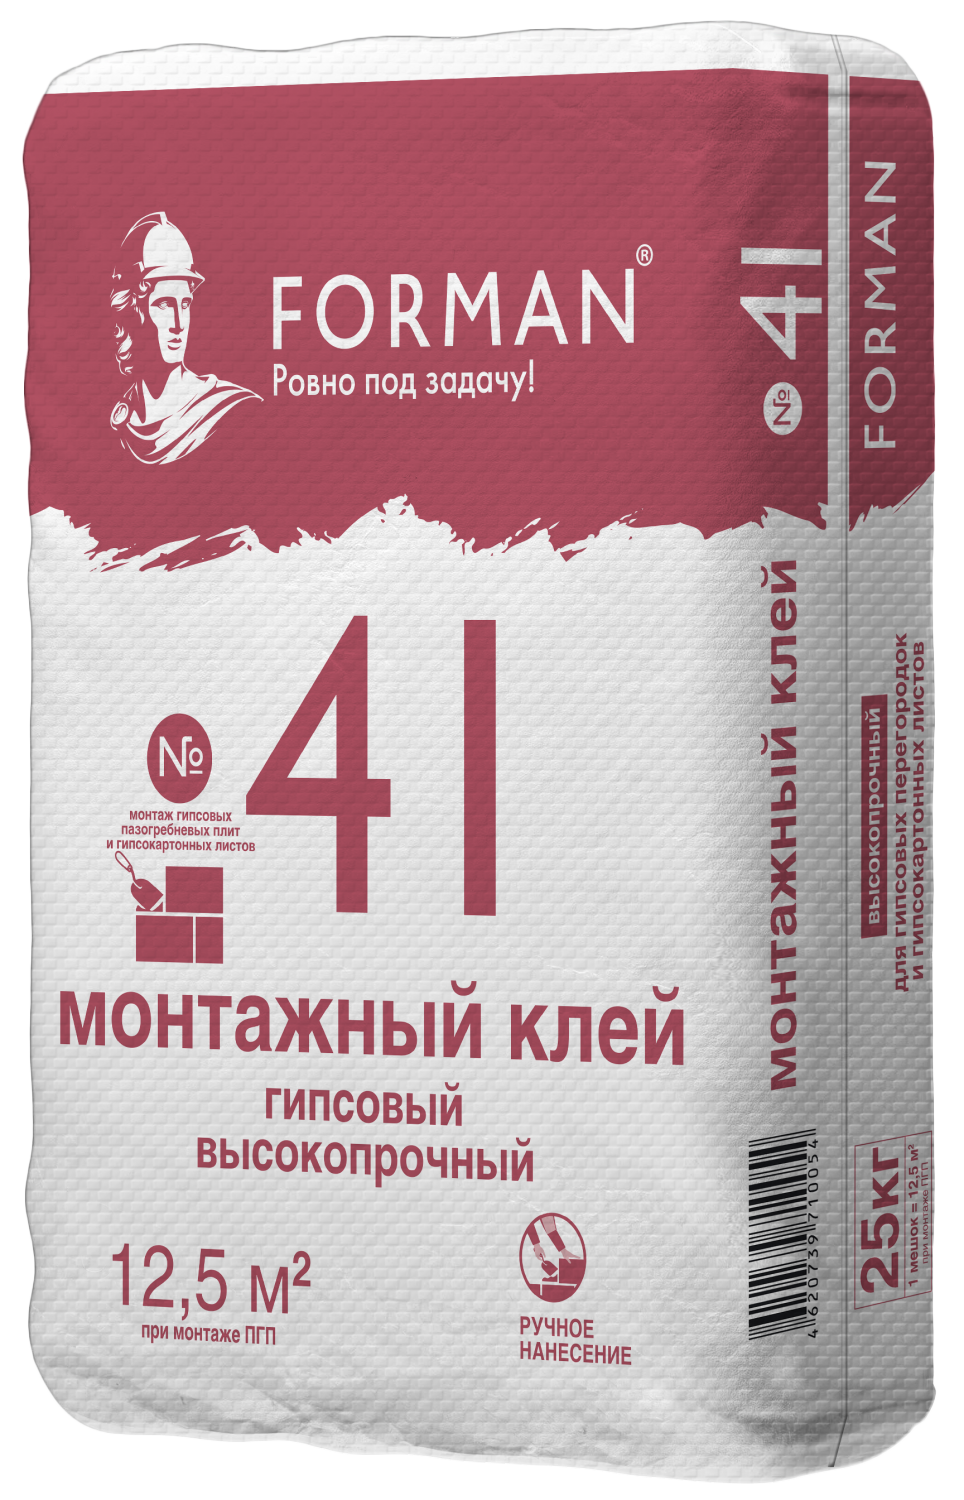 Forman 41 (Клей для ПГП и ГКЛ): цена,  гипсовый клей для монтажа .